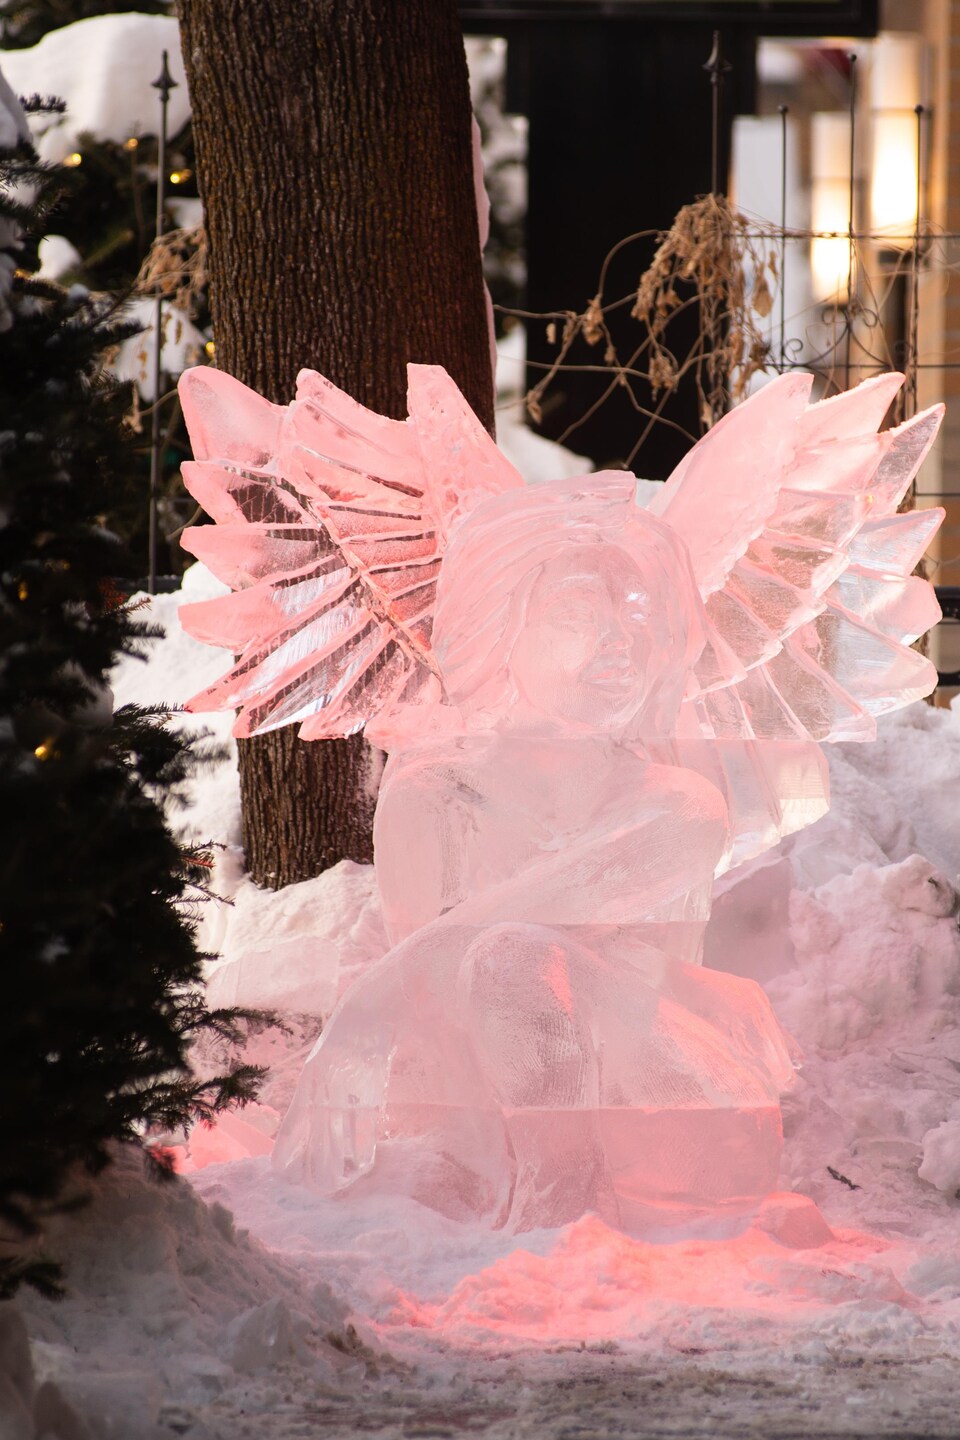 La sculpture de l'ange, terminée, est teintée de rose. 